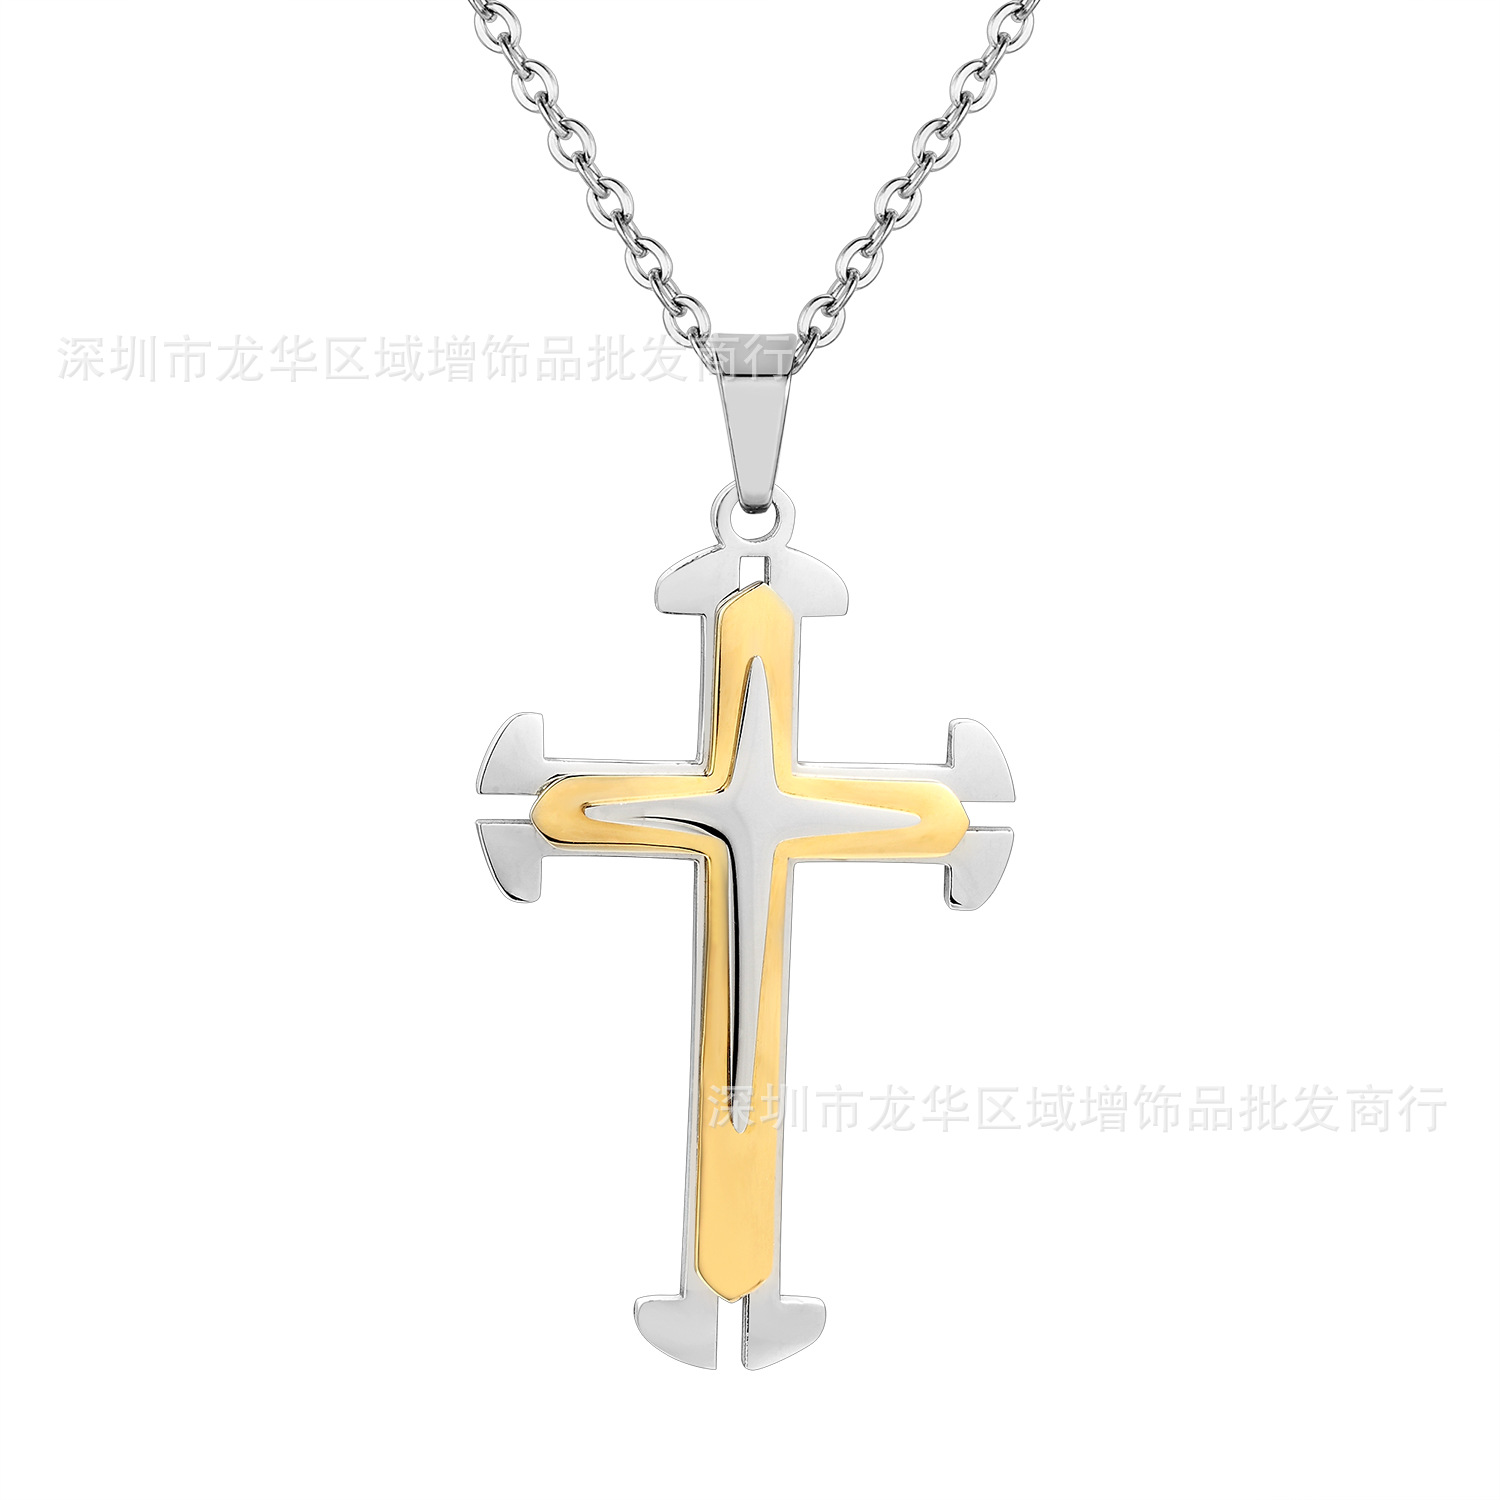 亚马逊饰品批发纯钢配链新款个性炫酷钛钢男士项链耶稣十字架示例图1